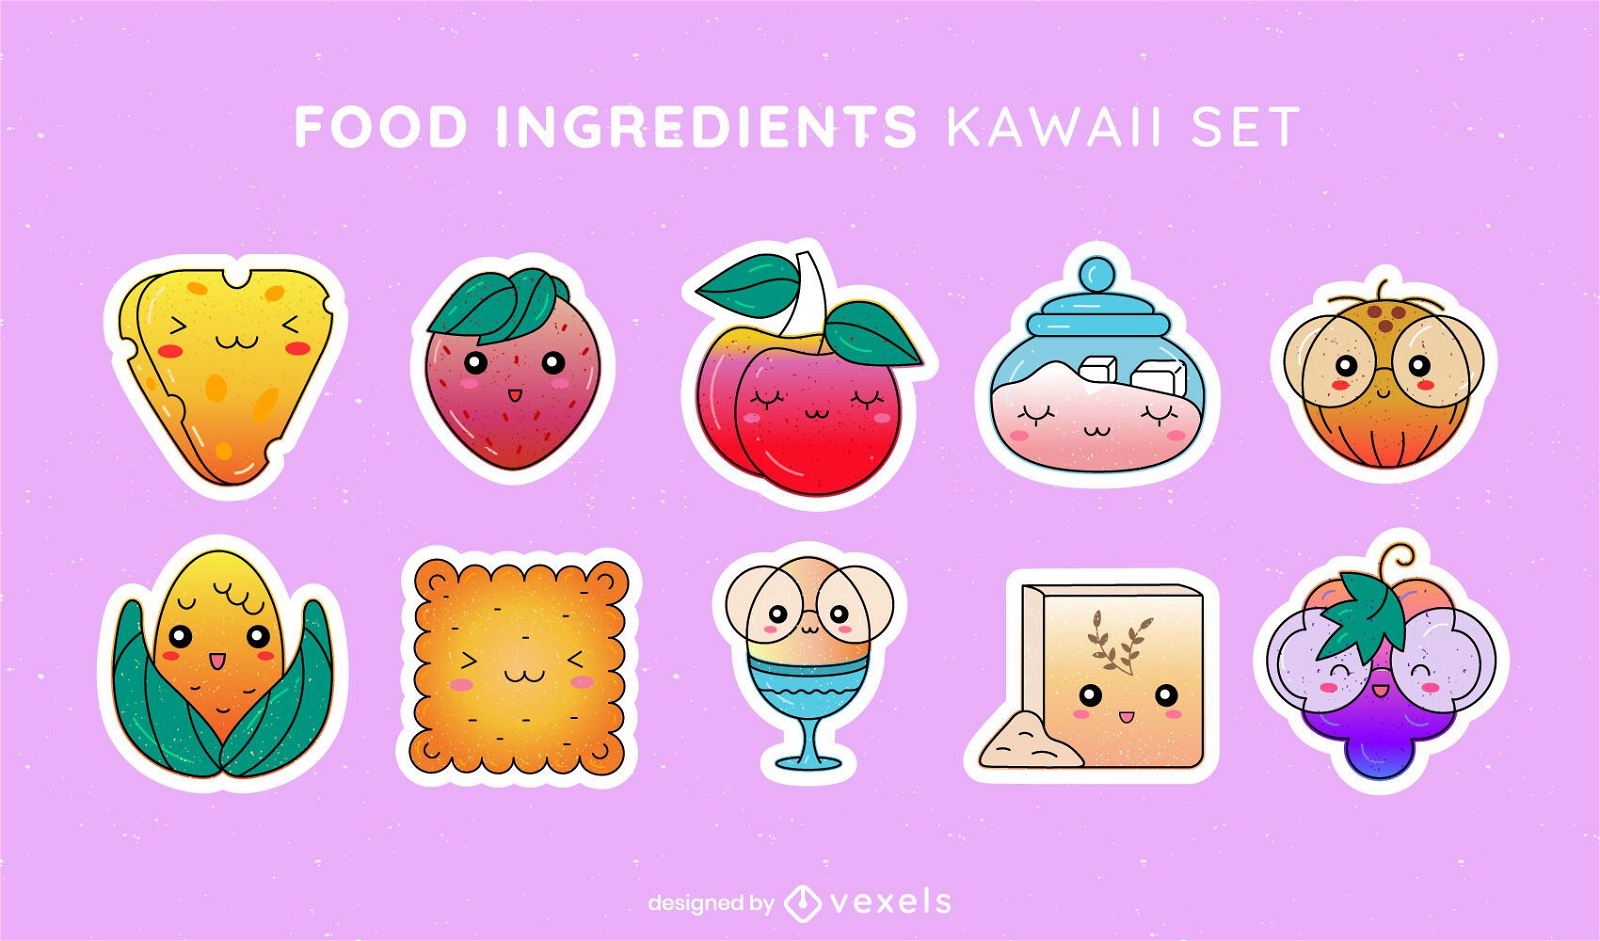 Food ingredients kawaii set